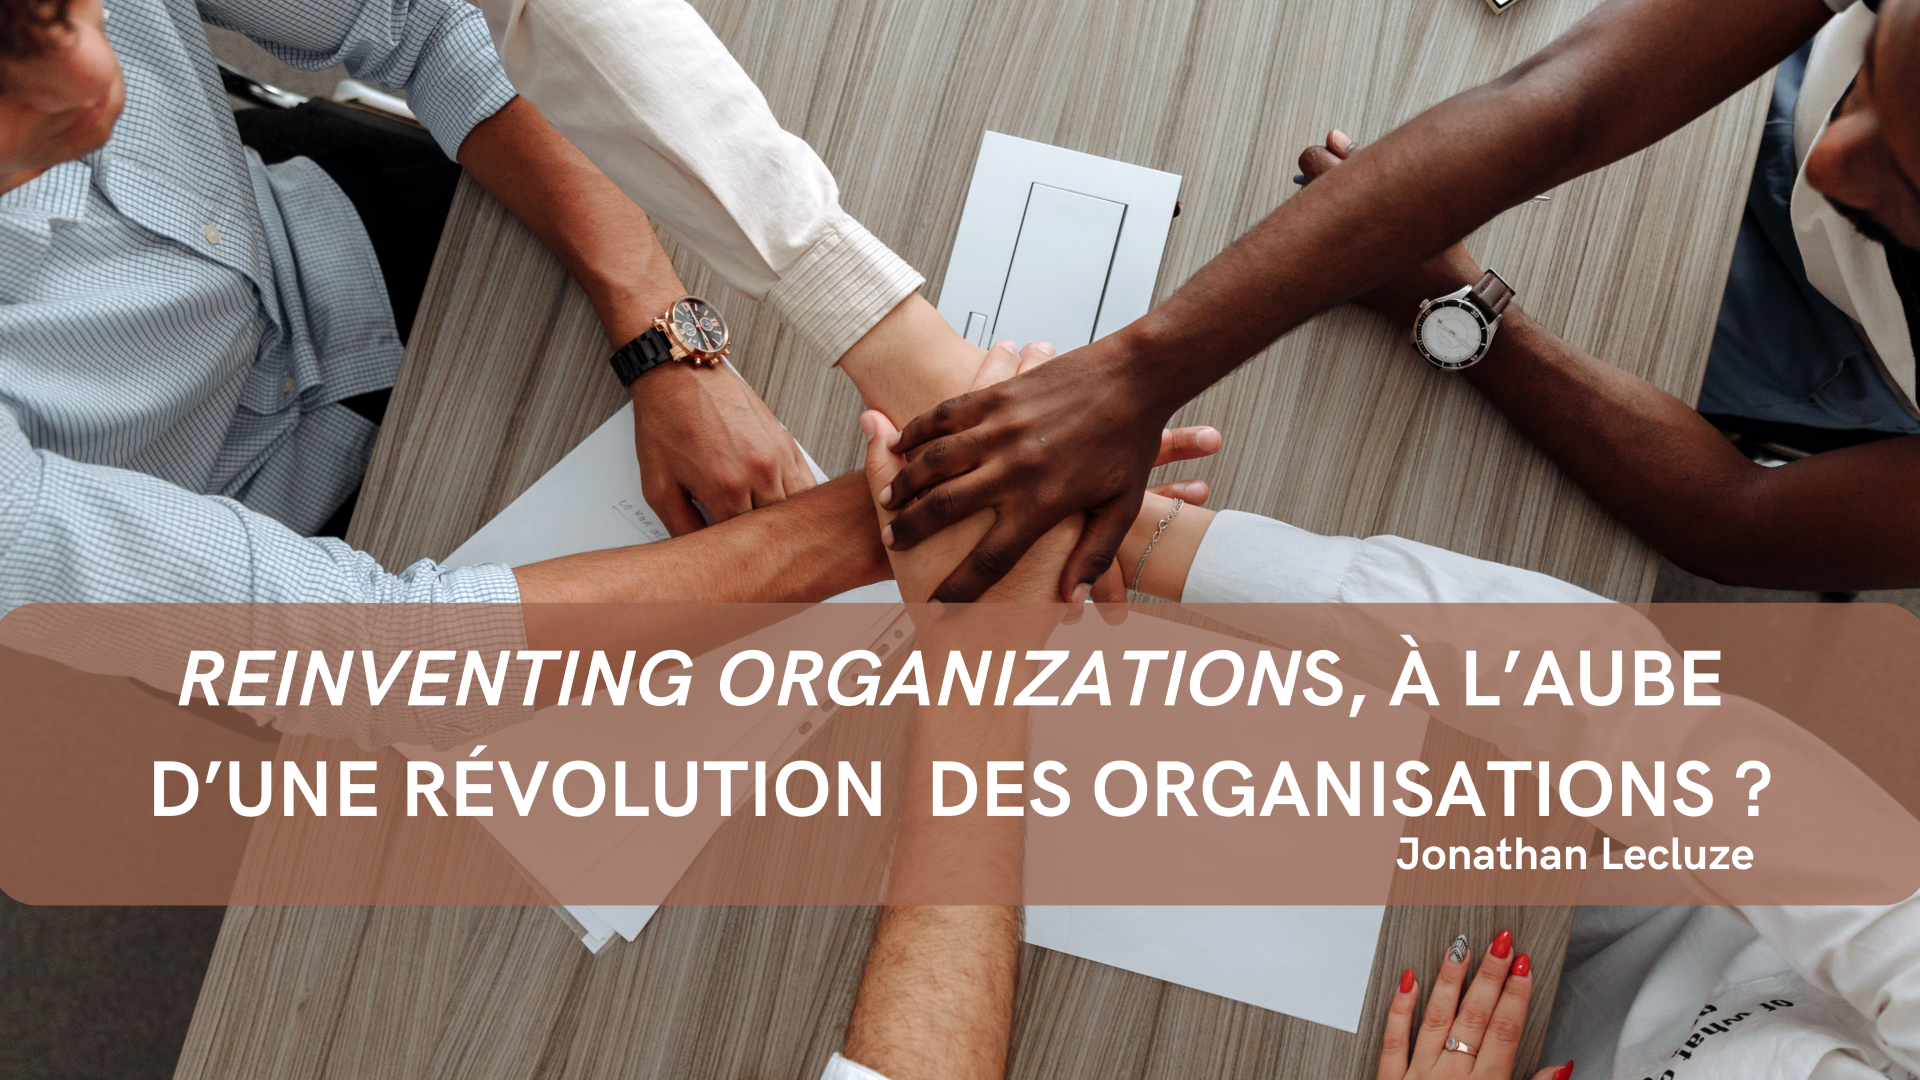 REINVENTING ORGANIZATIONS, à l’aube d’une révolution des organisations?